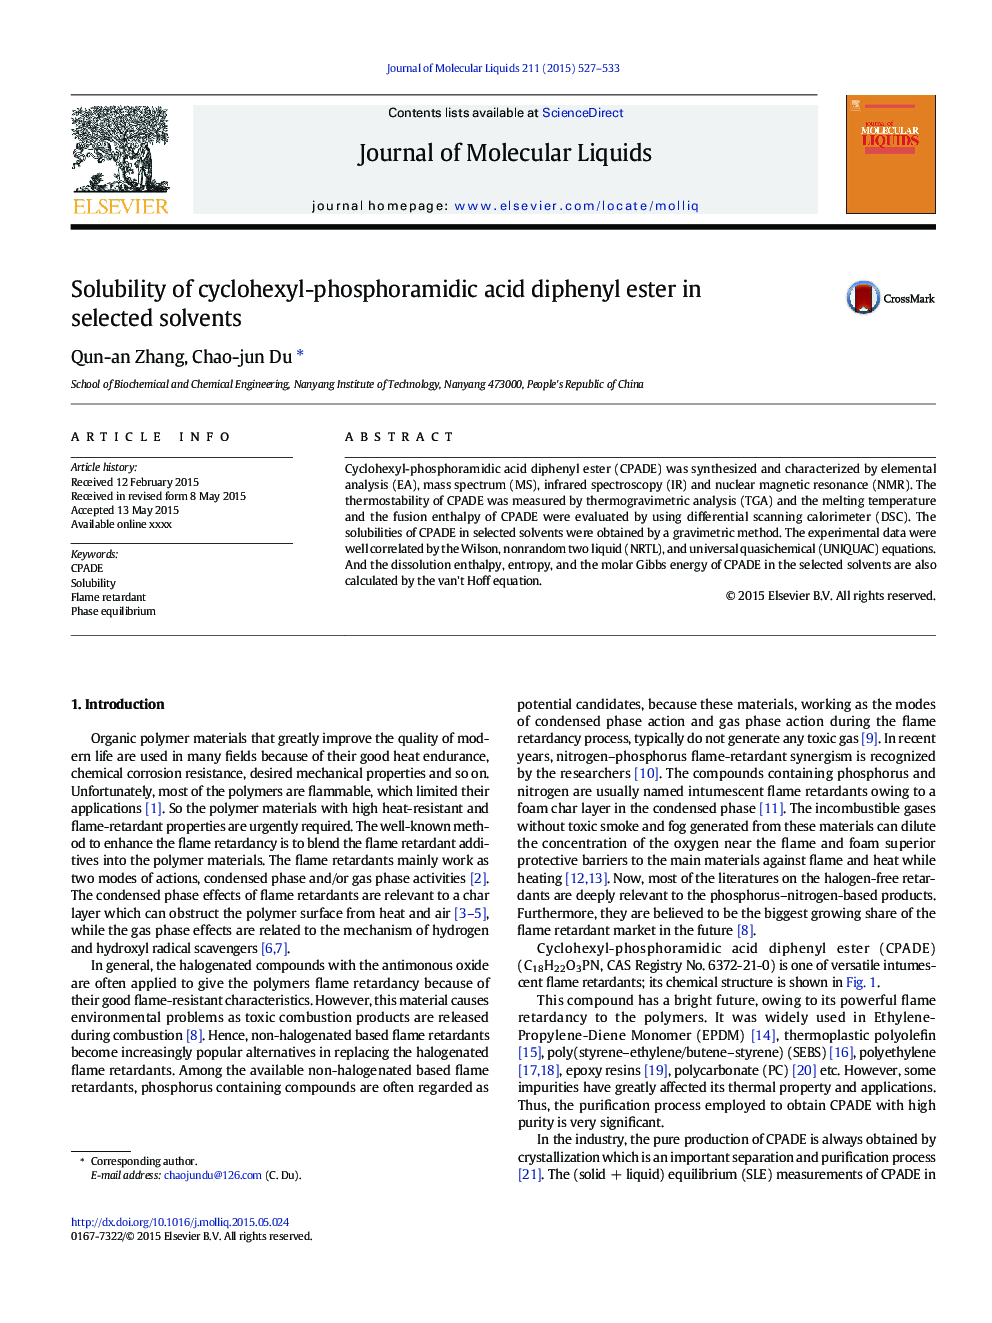 محلول سازی دیفنیل استر اسید سیکلوکس فسفورامیدیک در حلال های انتخاب شده 